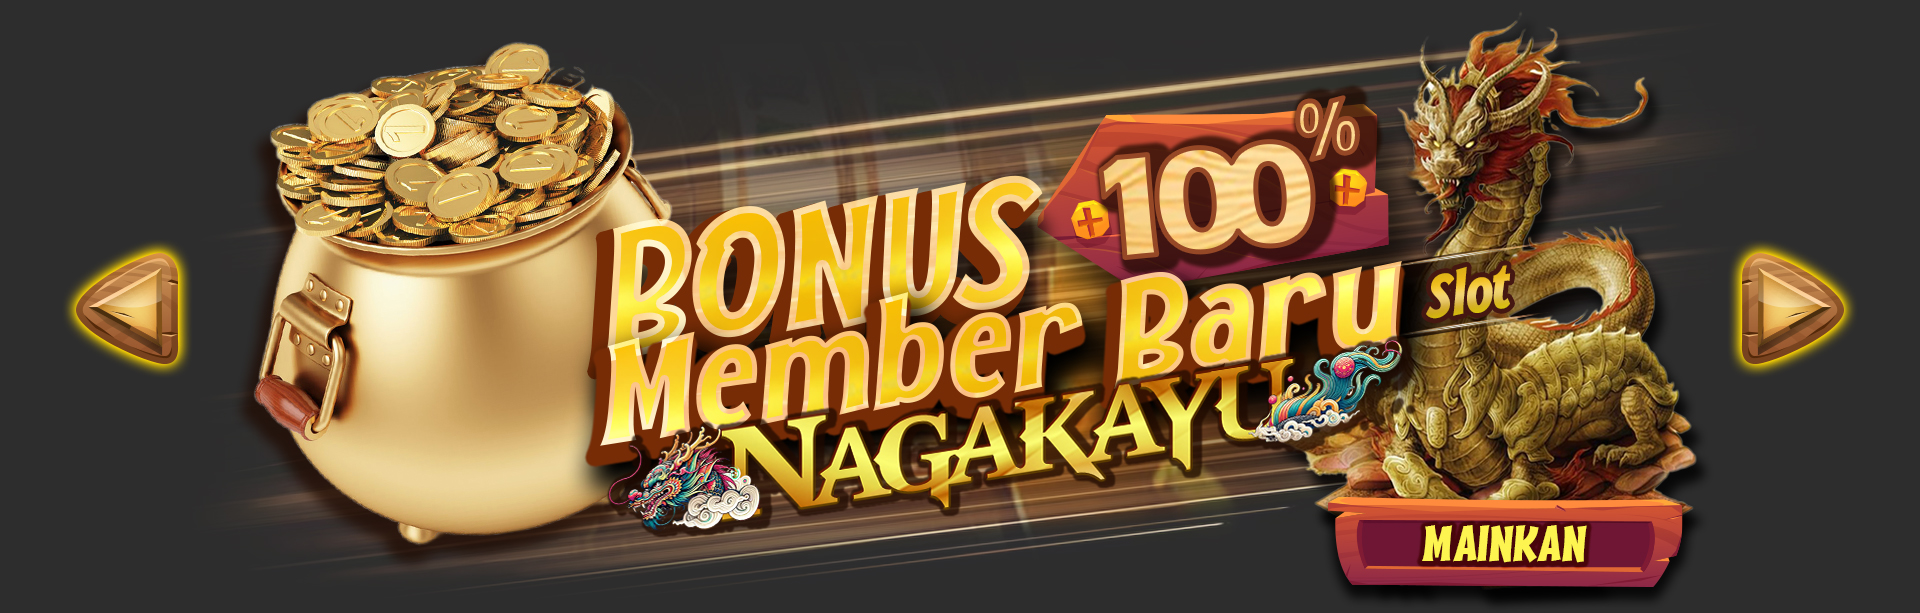 Bonus Member Baru Nagakayu Slot